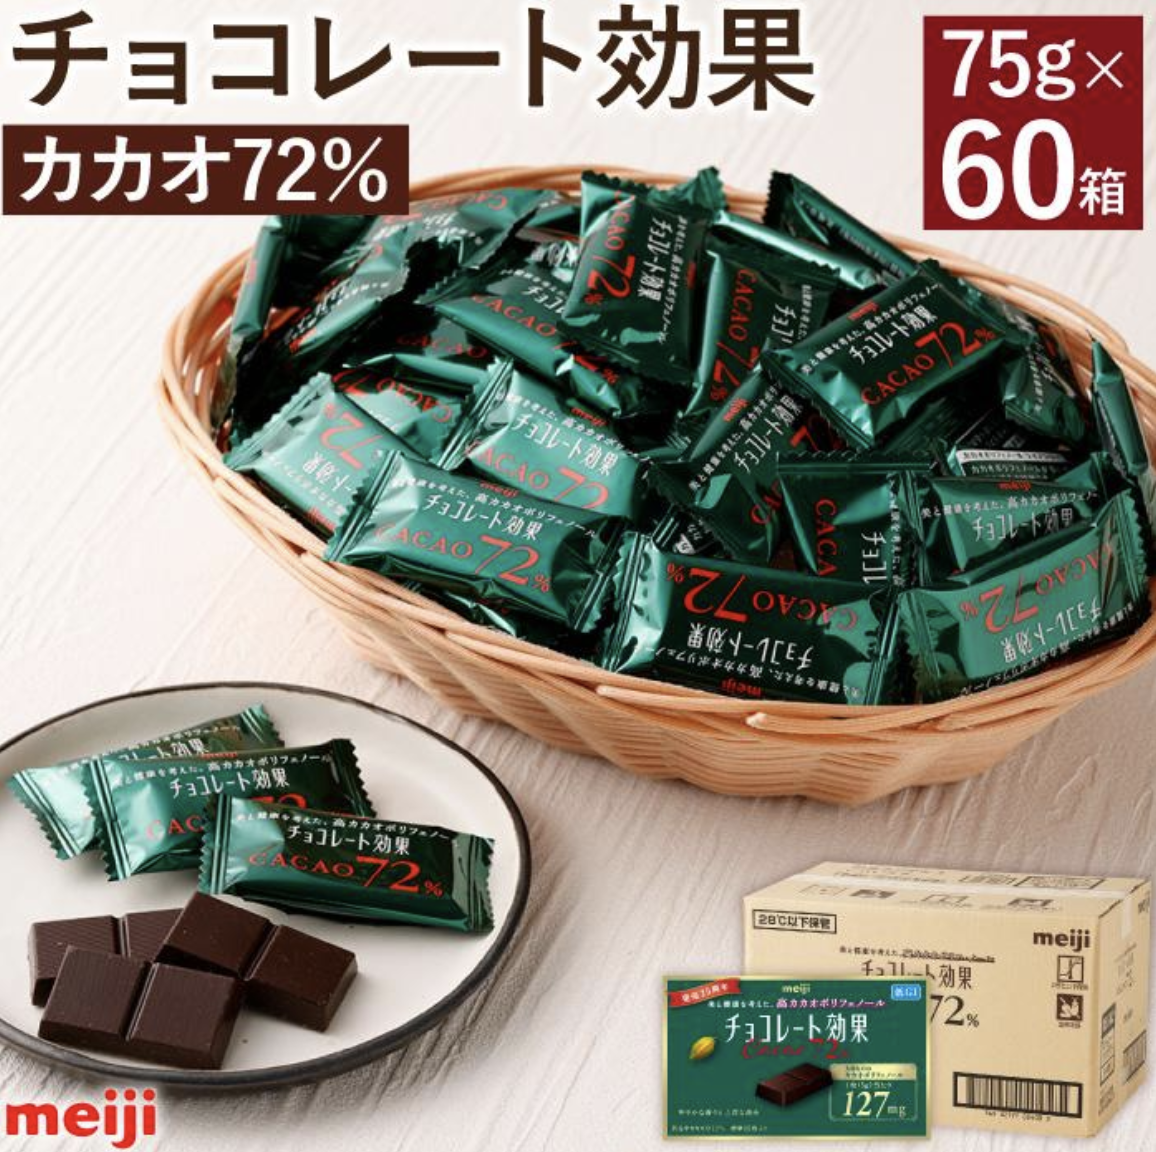 明治 チョコレート効果 カカオ72% 60箱 イメージ